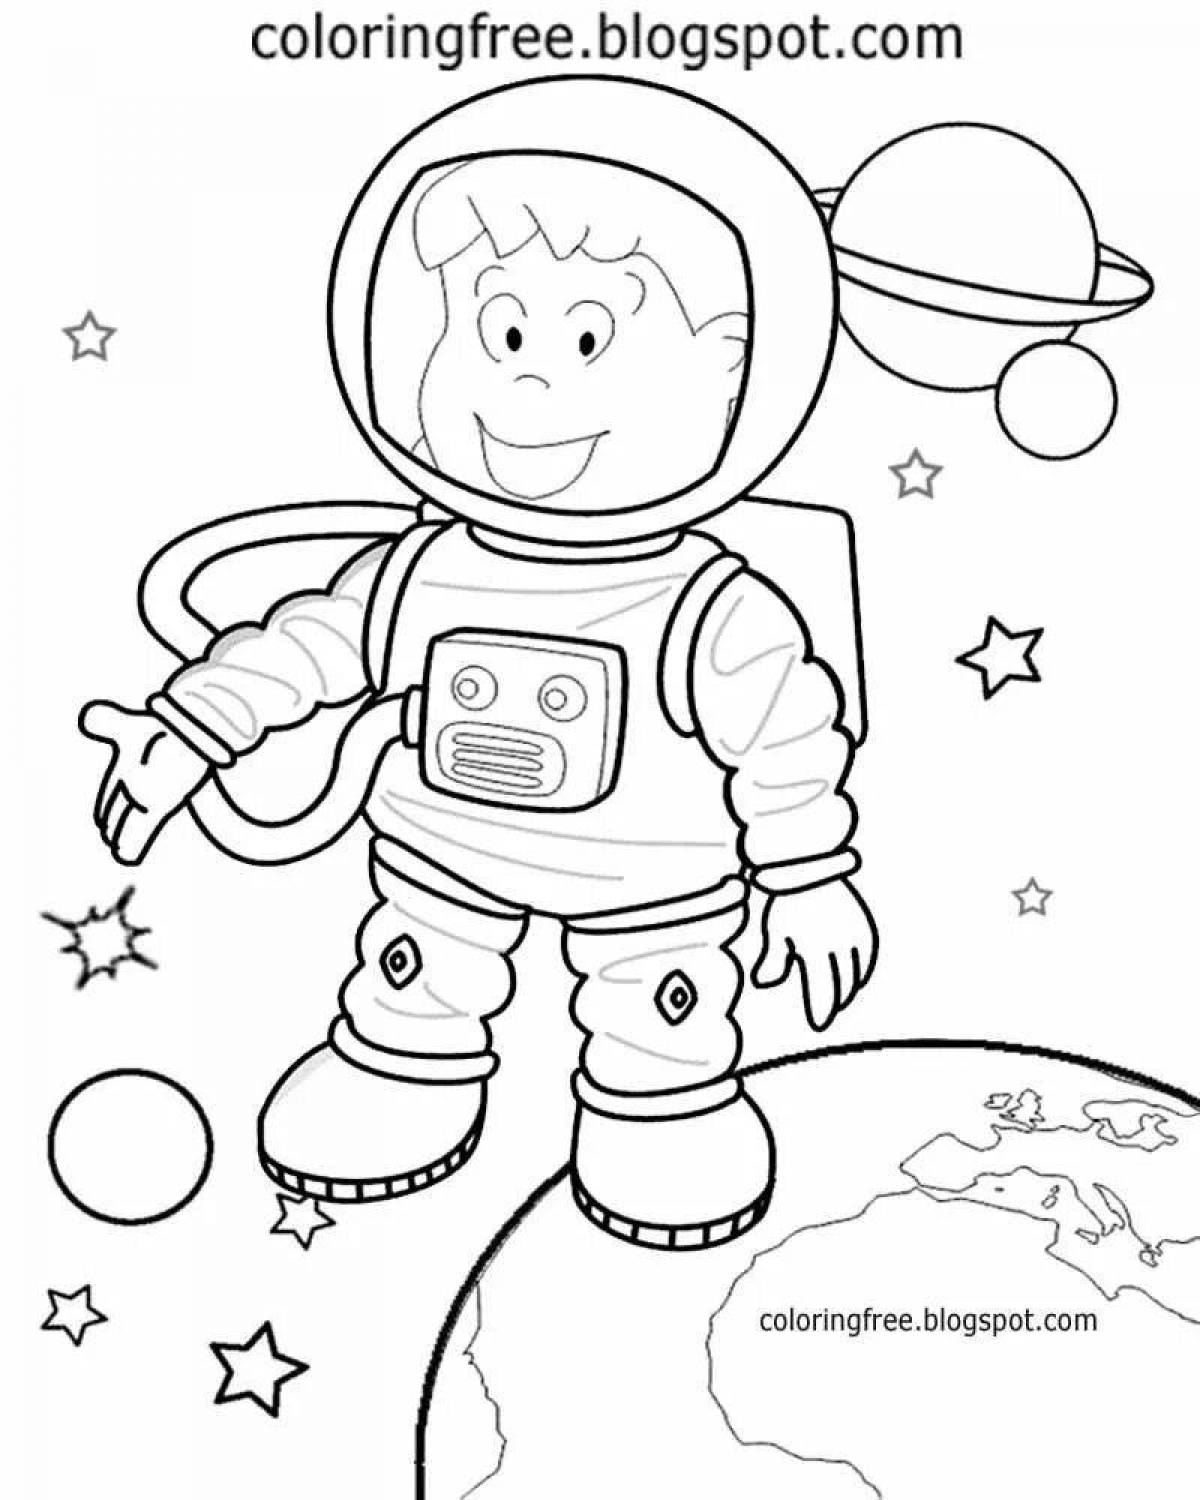 Распечатать космонавта для поделки. Космонавт раскраска для детей. Раскраска для малышей. Космос. Космос раскраска для детей. Раскраска. В космосе.